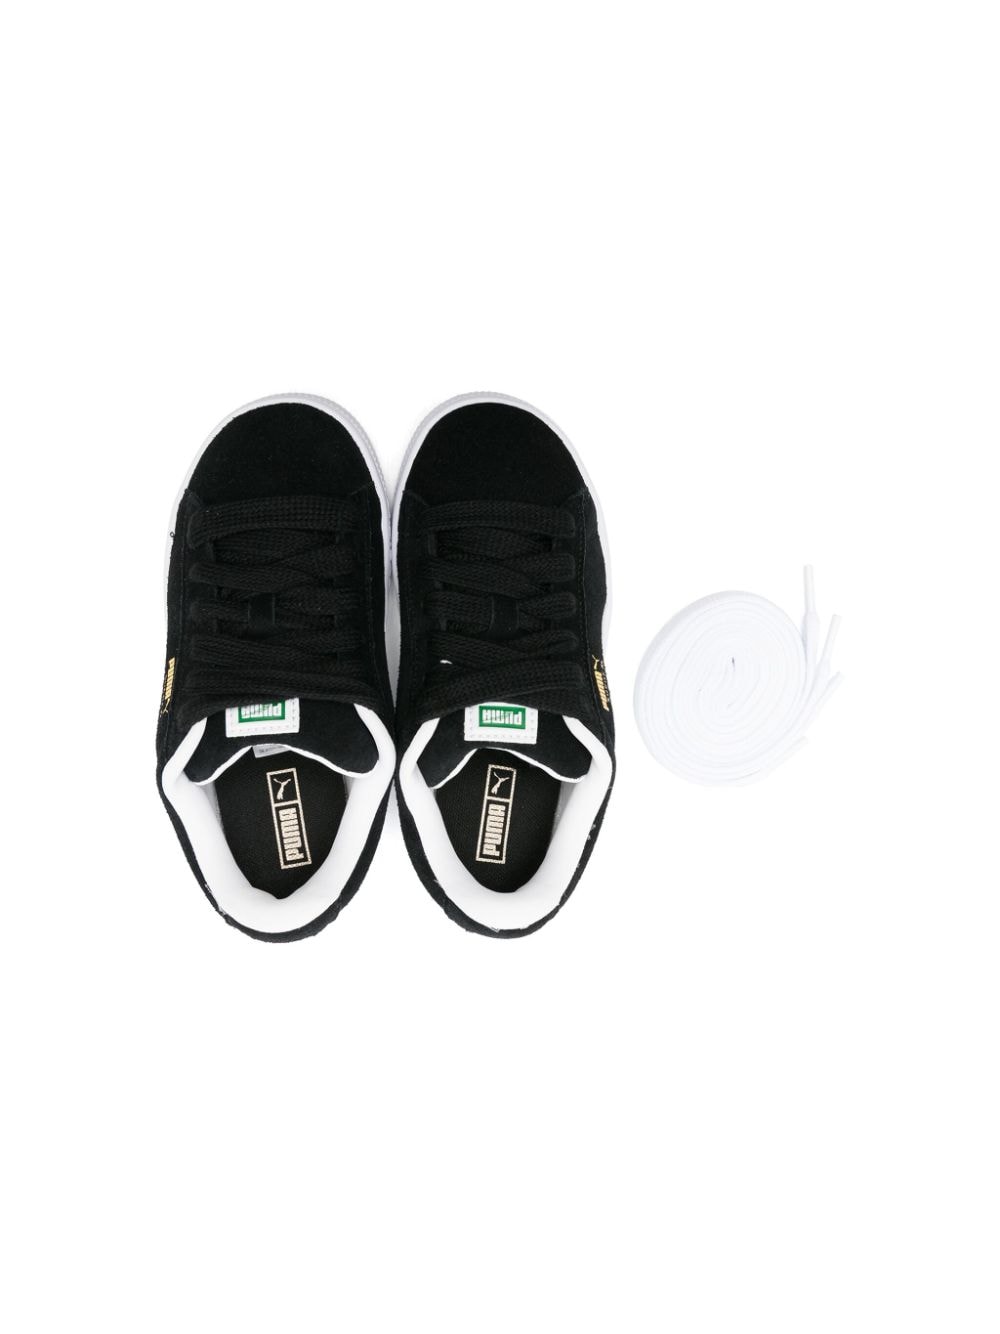 Sneakers nera/bianca bambino